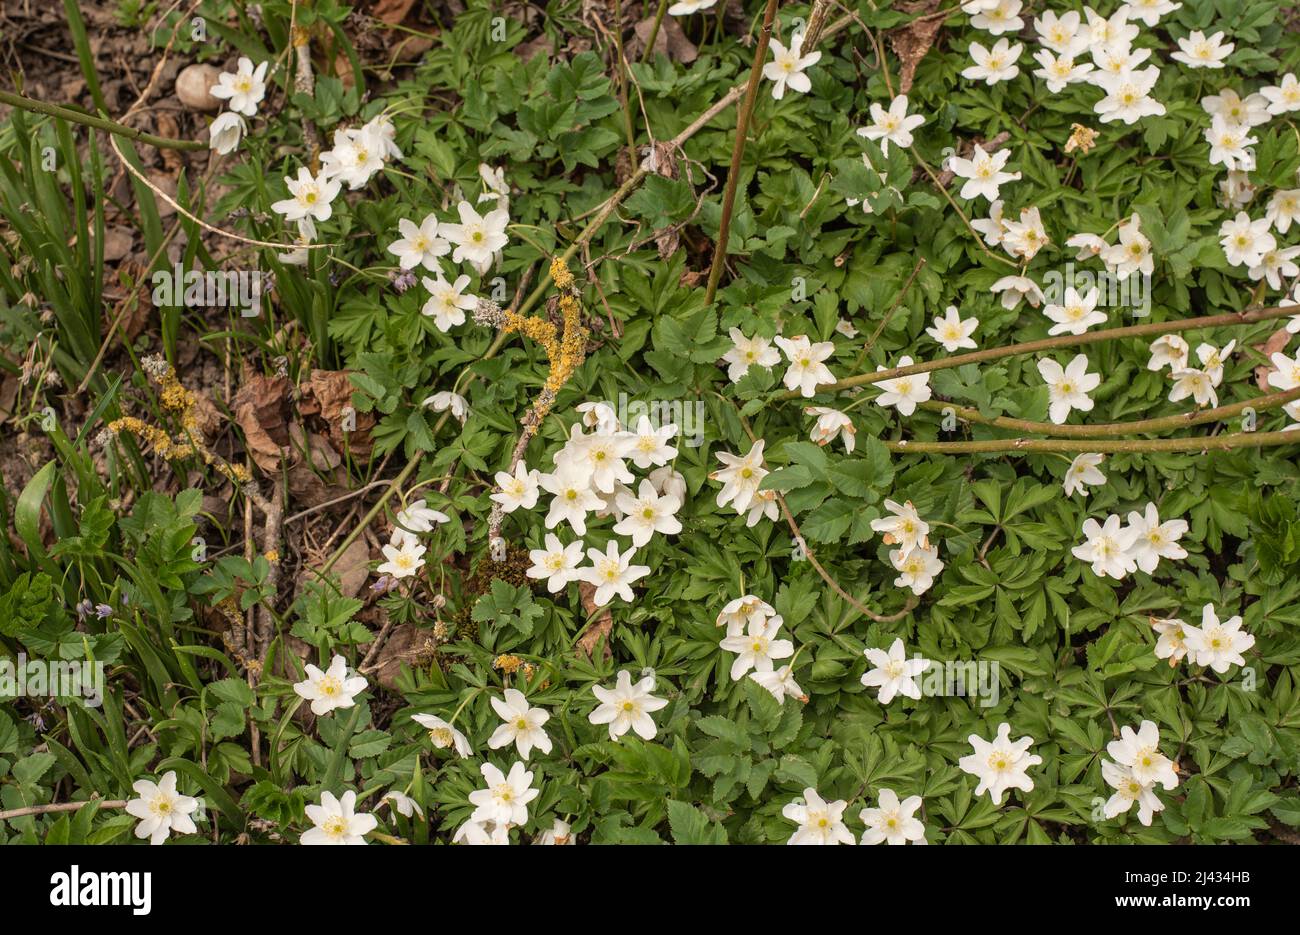 primer plano de un grupo de anémonas de madera de flor blanca en el suelo del bosque Foto de stock